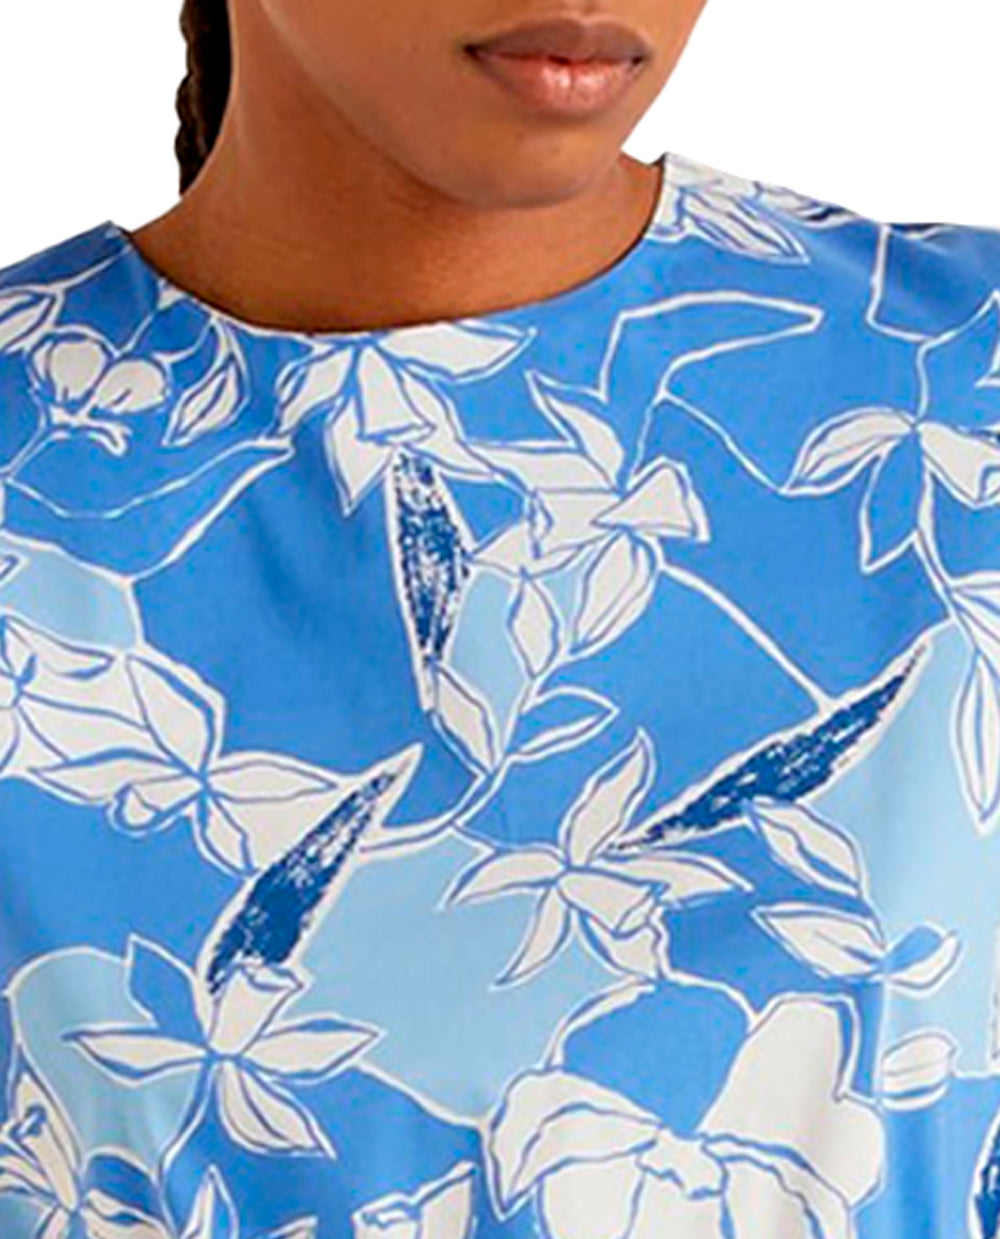 Blusa con estampado floral color celeste